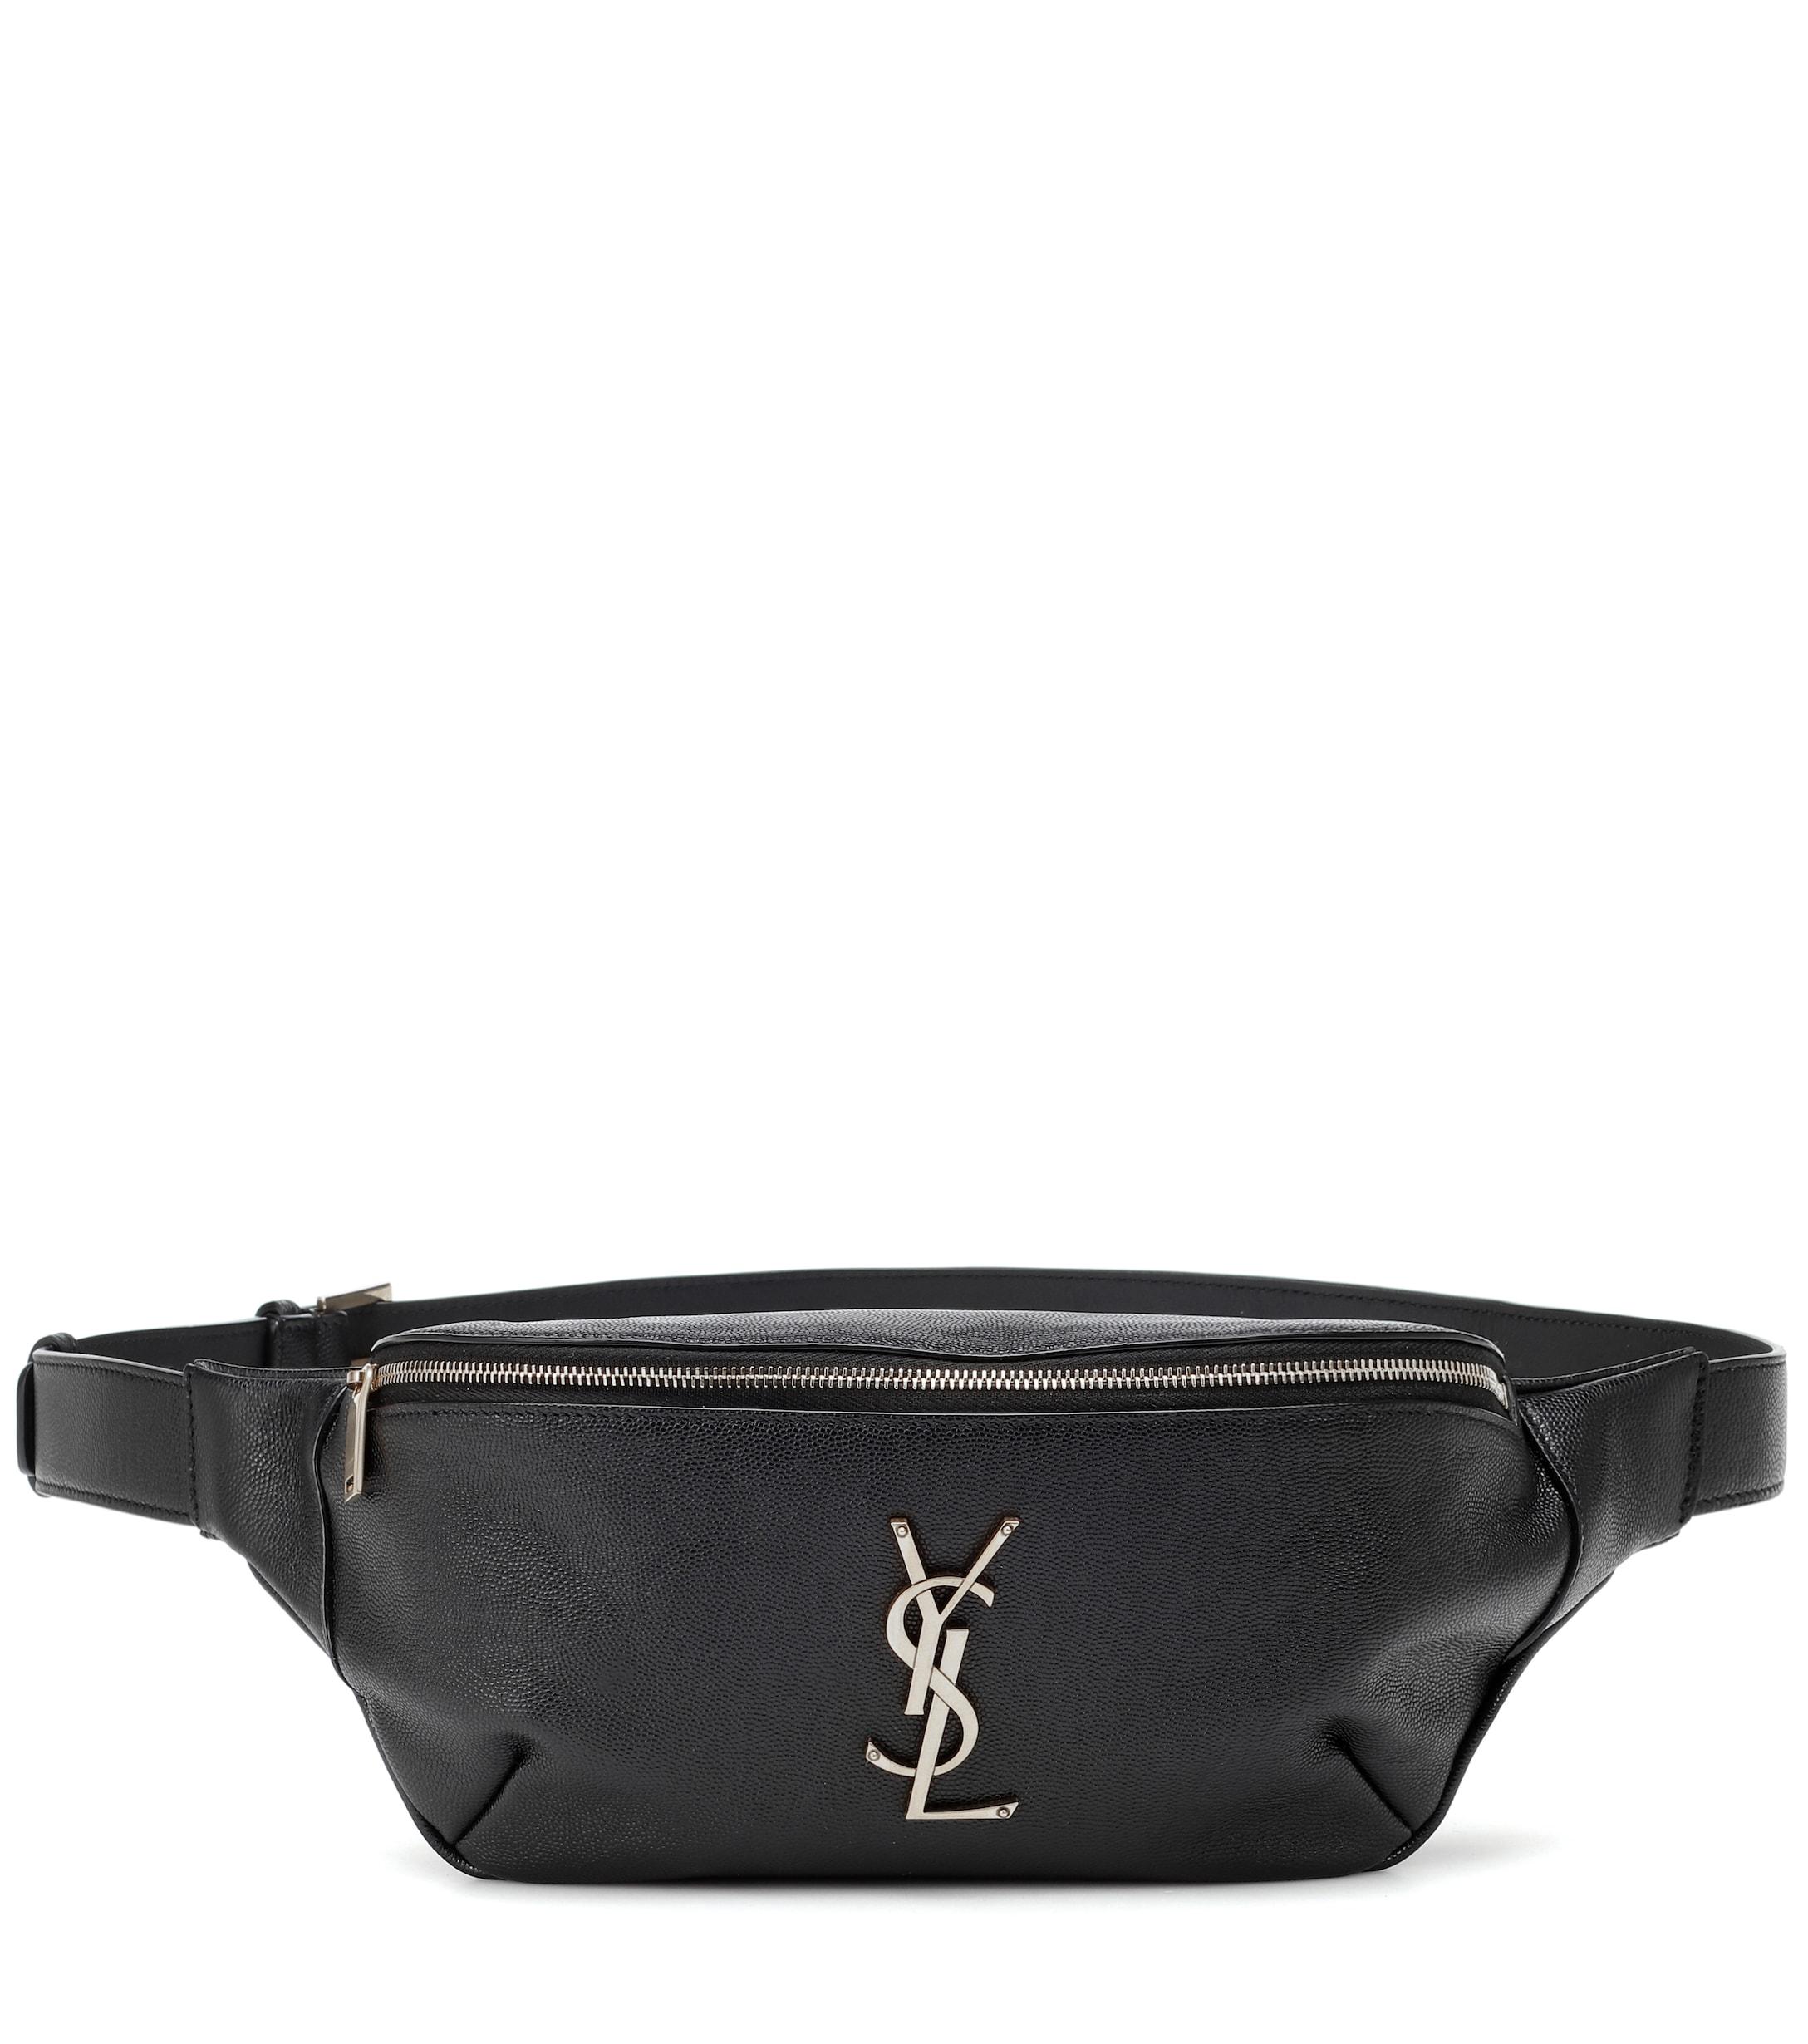 Saint Laurent Classic Monogram Leather Belt Bag in Black - Lyst